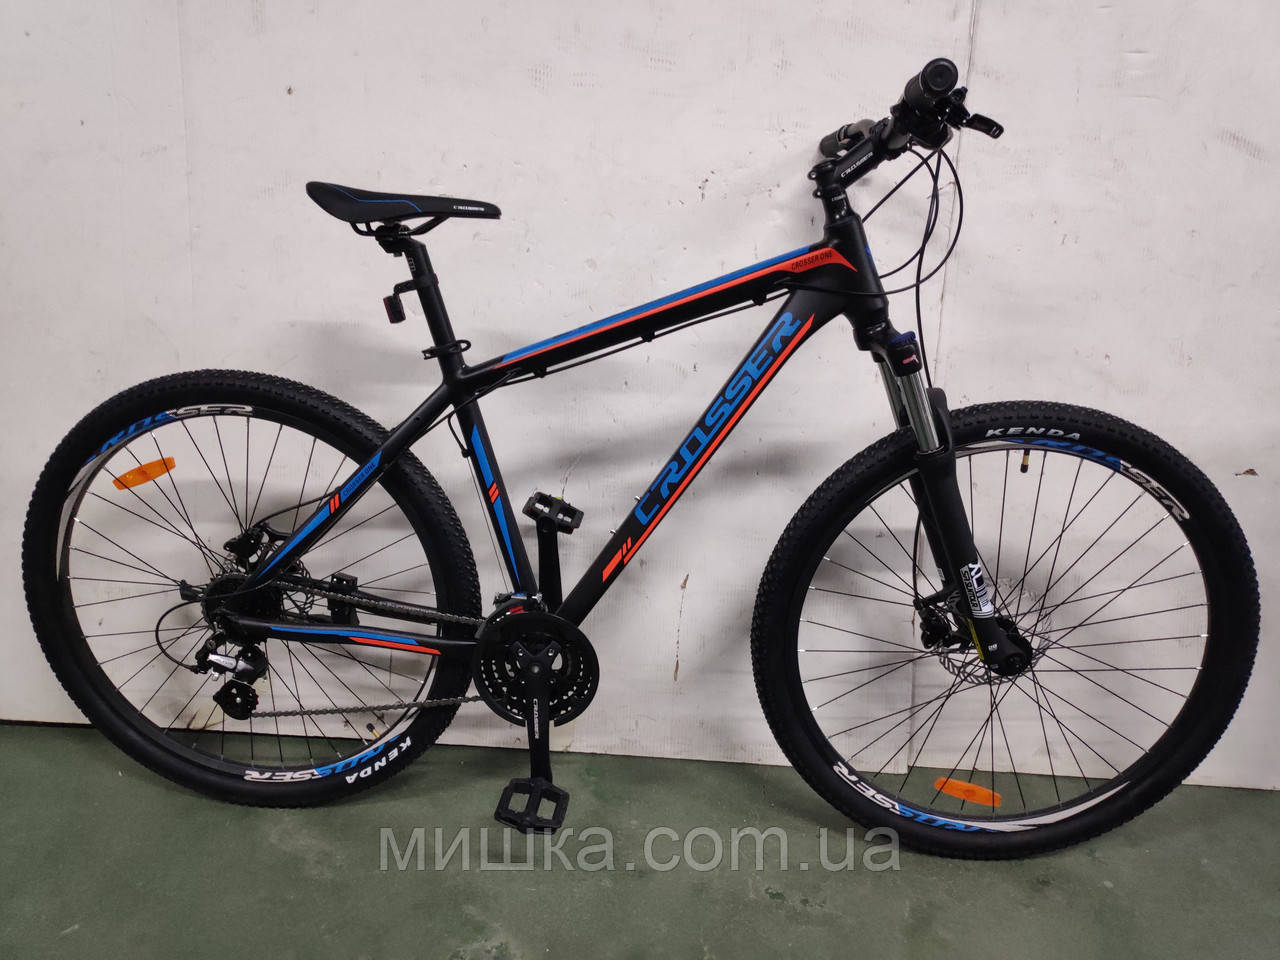 Велосипед алюмінієвий Crosser One-1 рама 19", колеса 29" гірський, гідравліка, чорно-синій